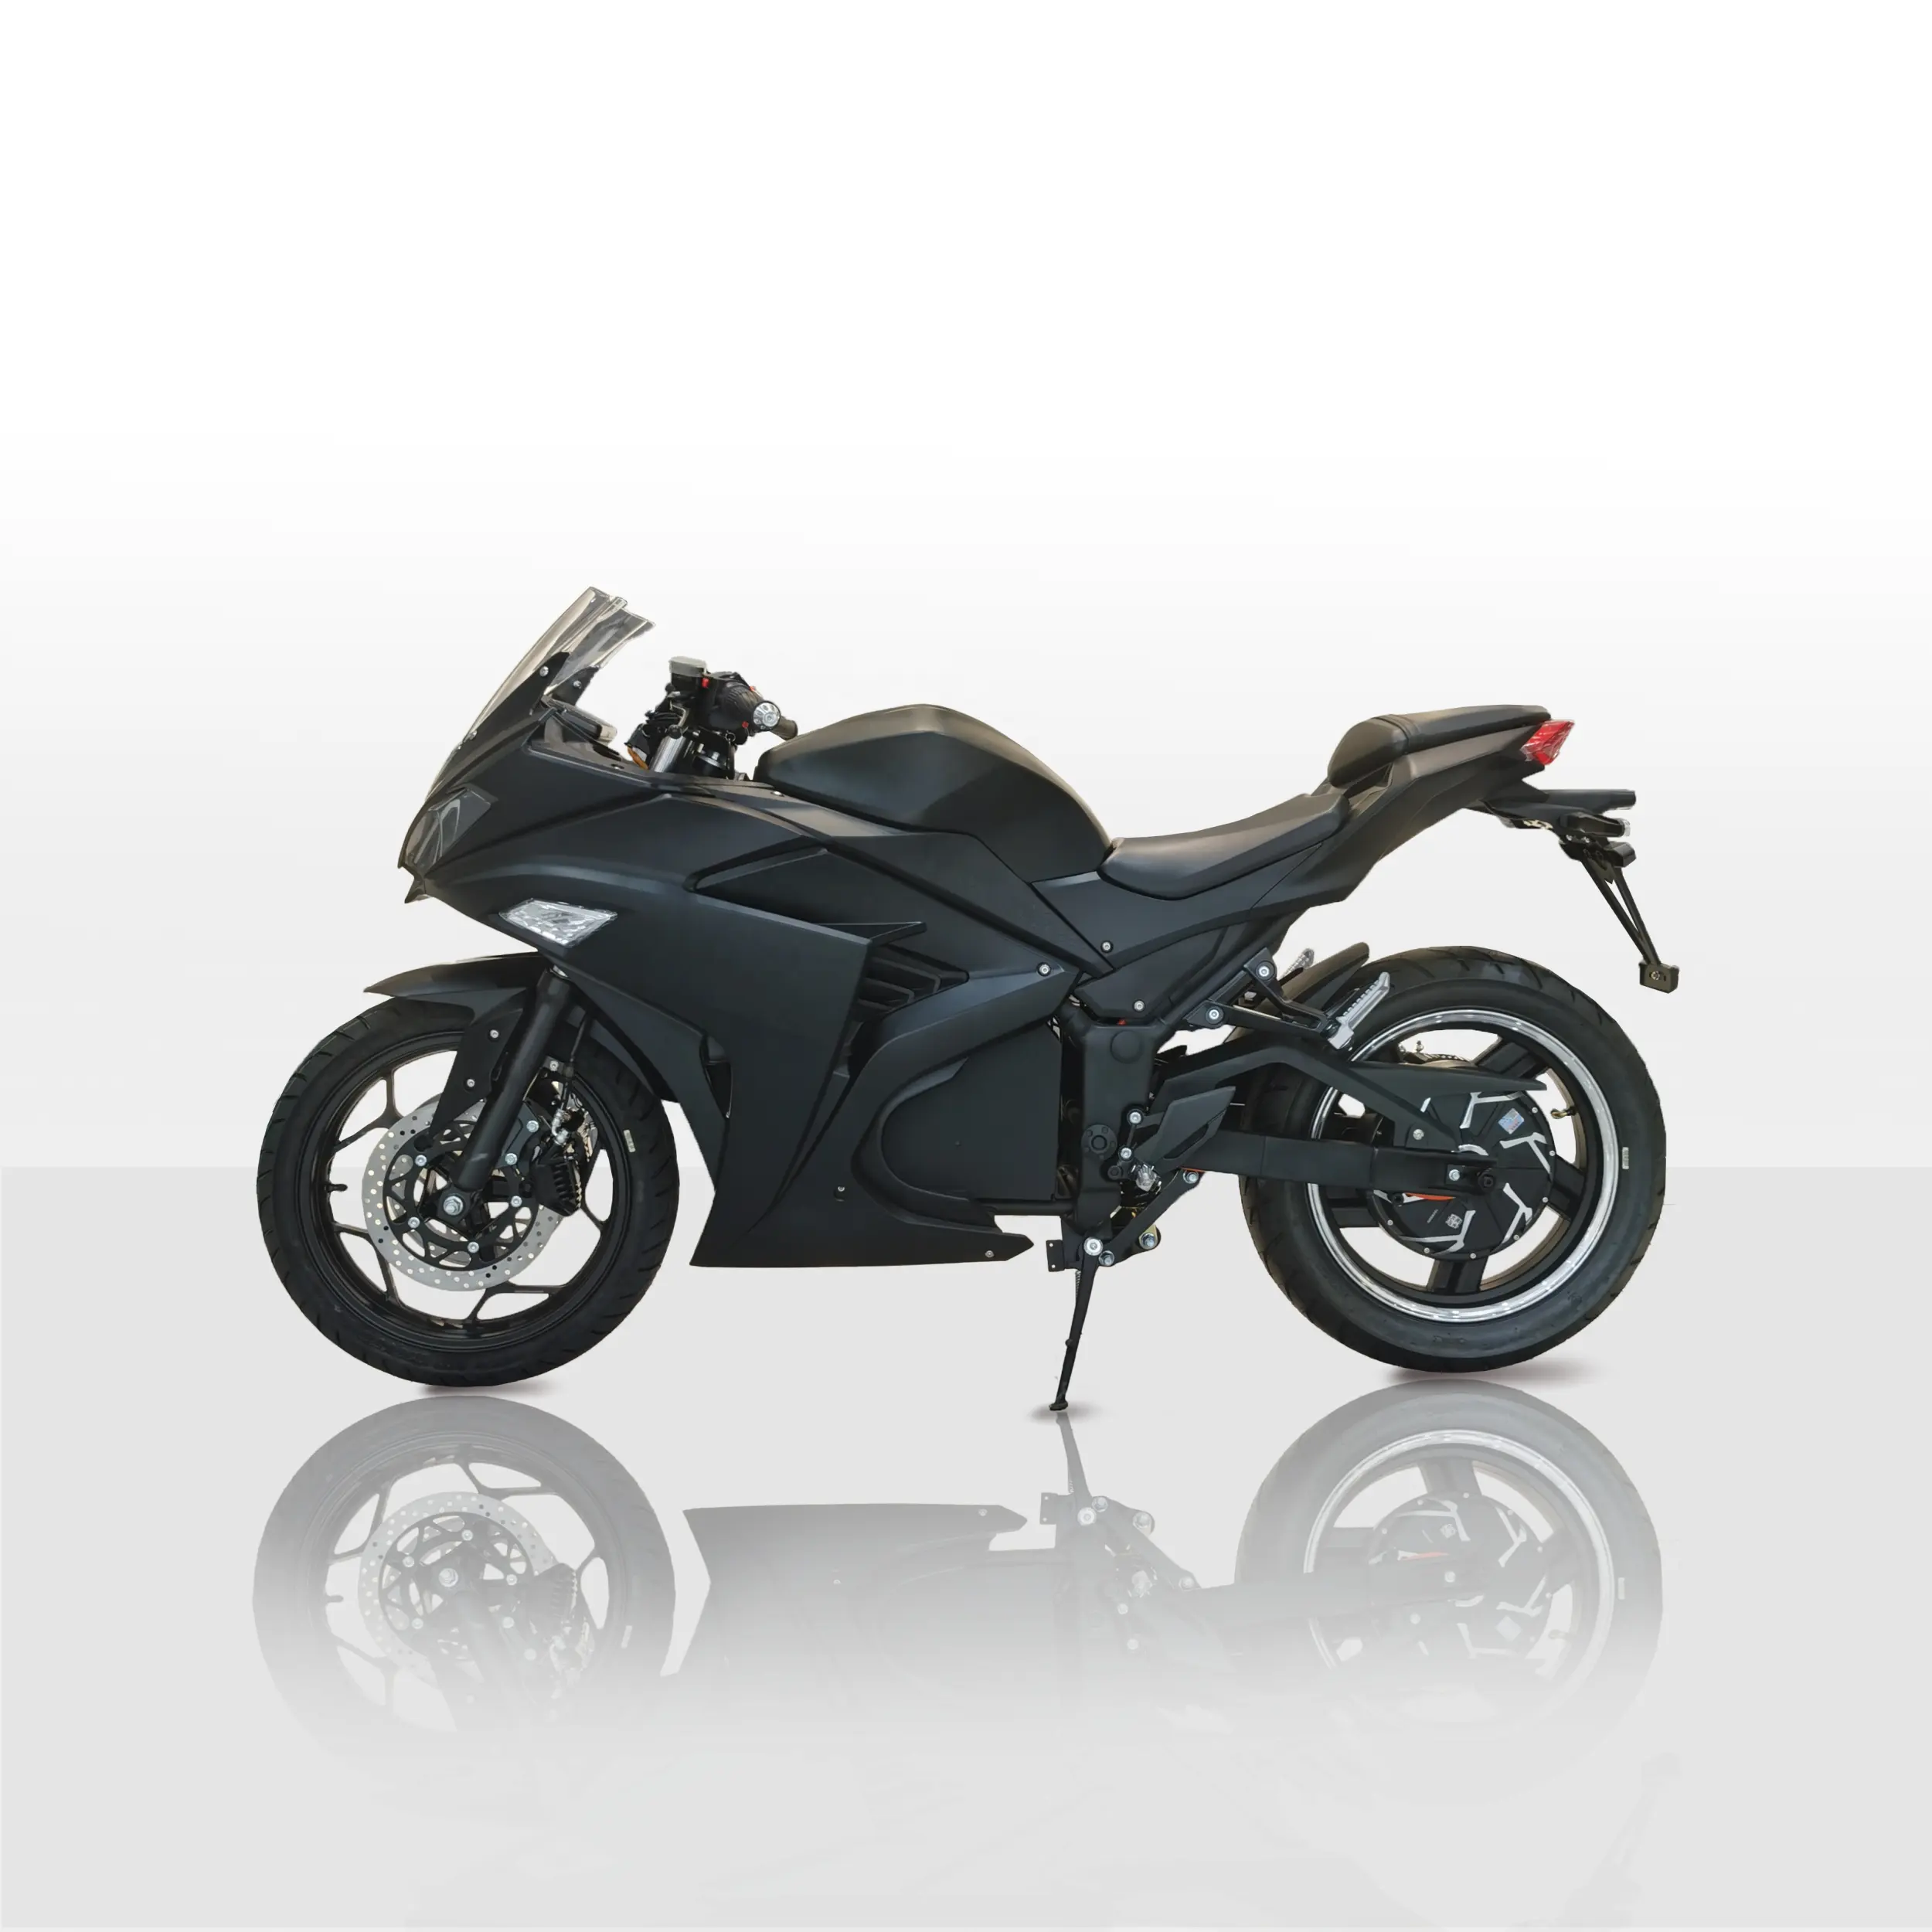 رخيصة EEC معتمد نمط الدراجات النارية 3000W كبيرة أفضل شكل الدراجة موتور دراجات كهربائية